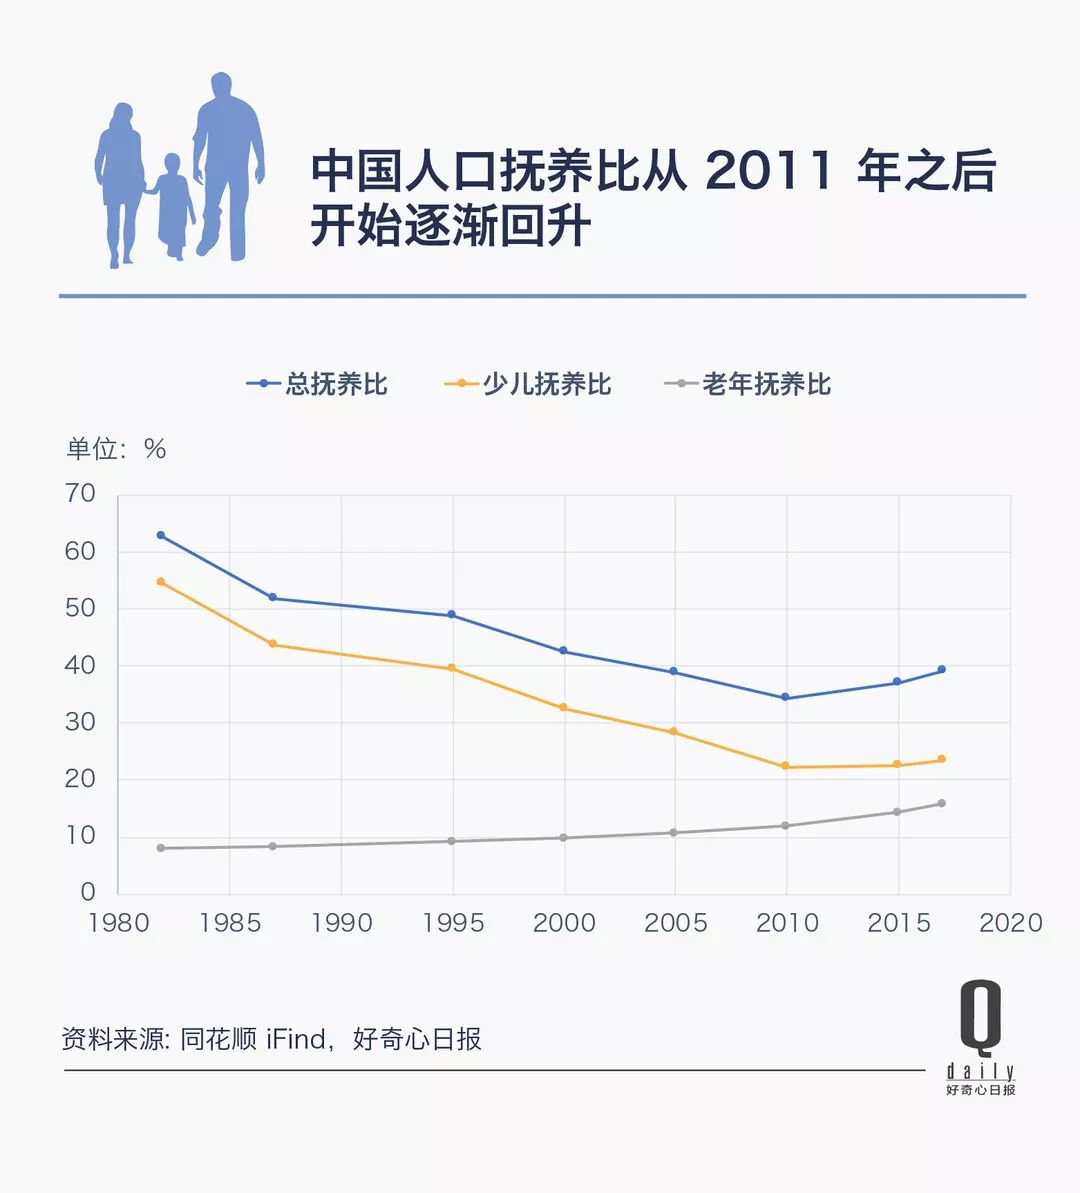 中国人口下降时间预测_中国人口预计从2020年开始减少吗